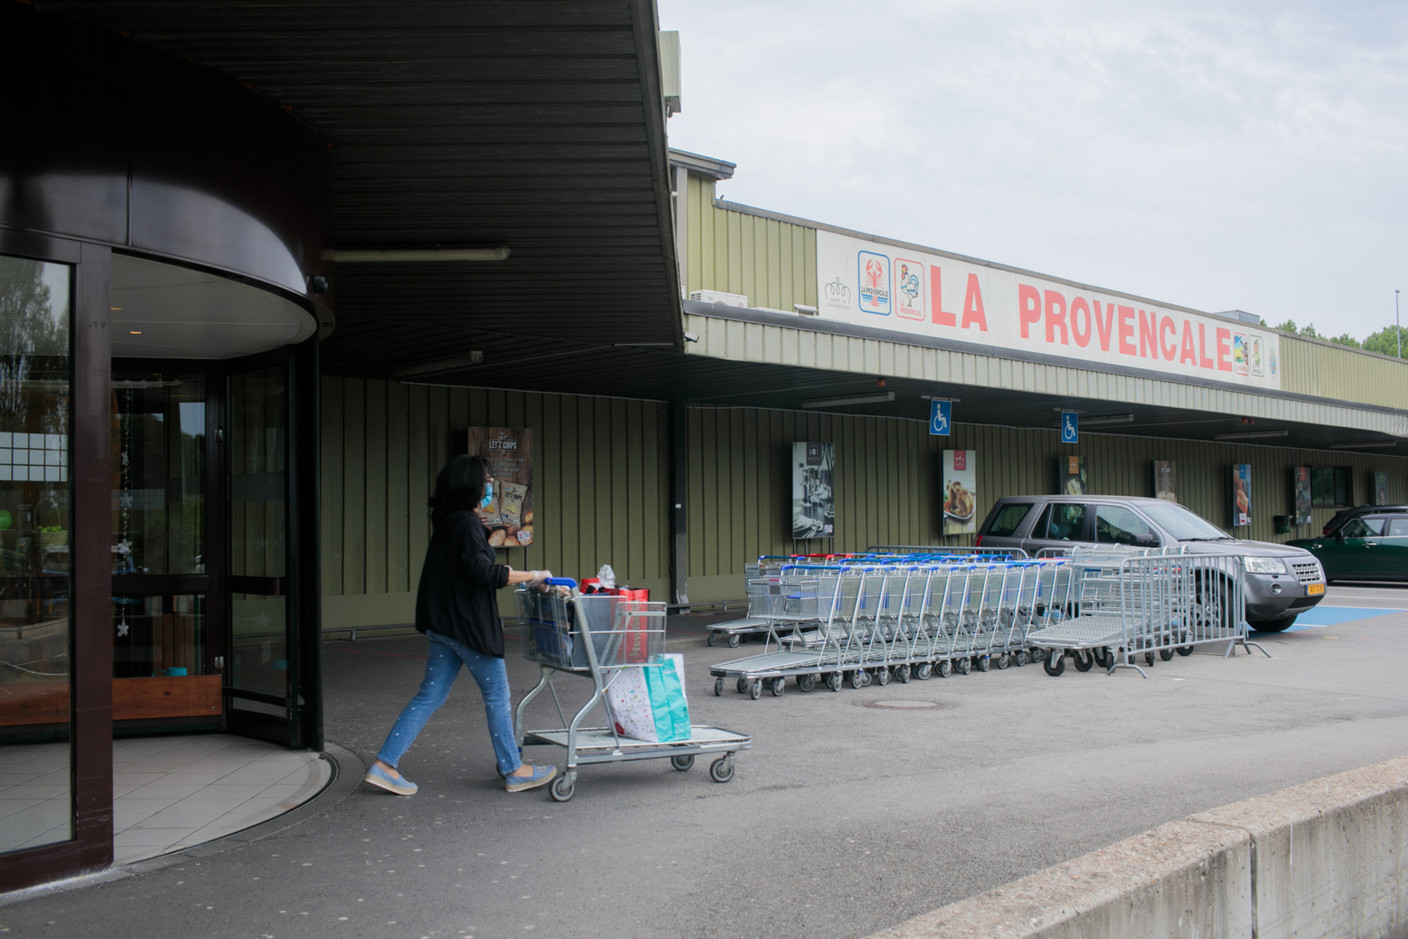 Pour faire leurs achats à La Provençale, les particuliers doivent acheter une carte client remboursable sous condition. (Photo: Matic Zorman/Maison Moderne)